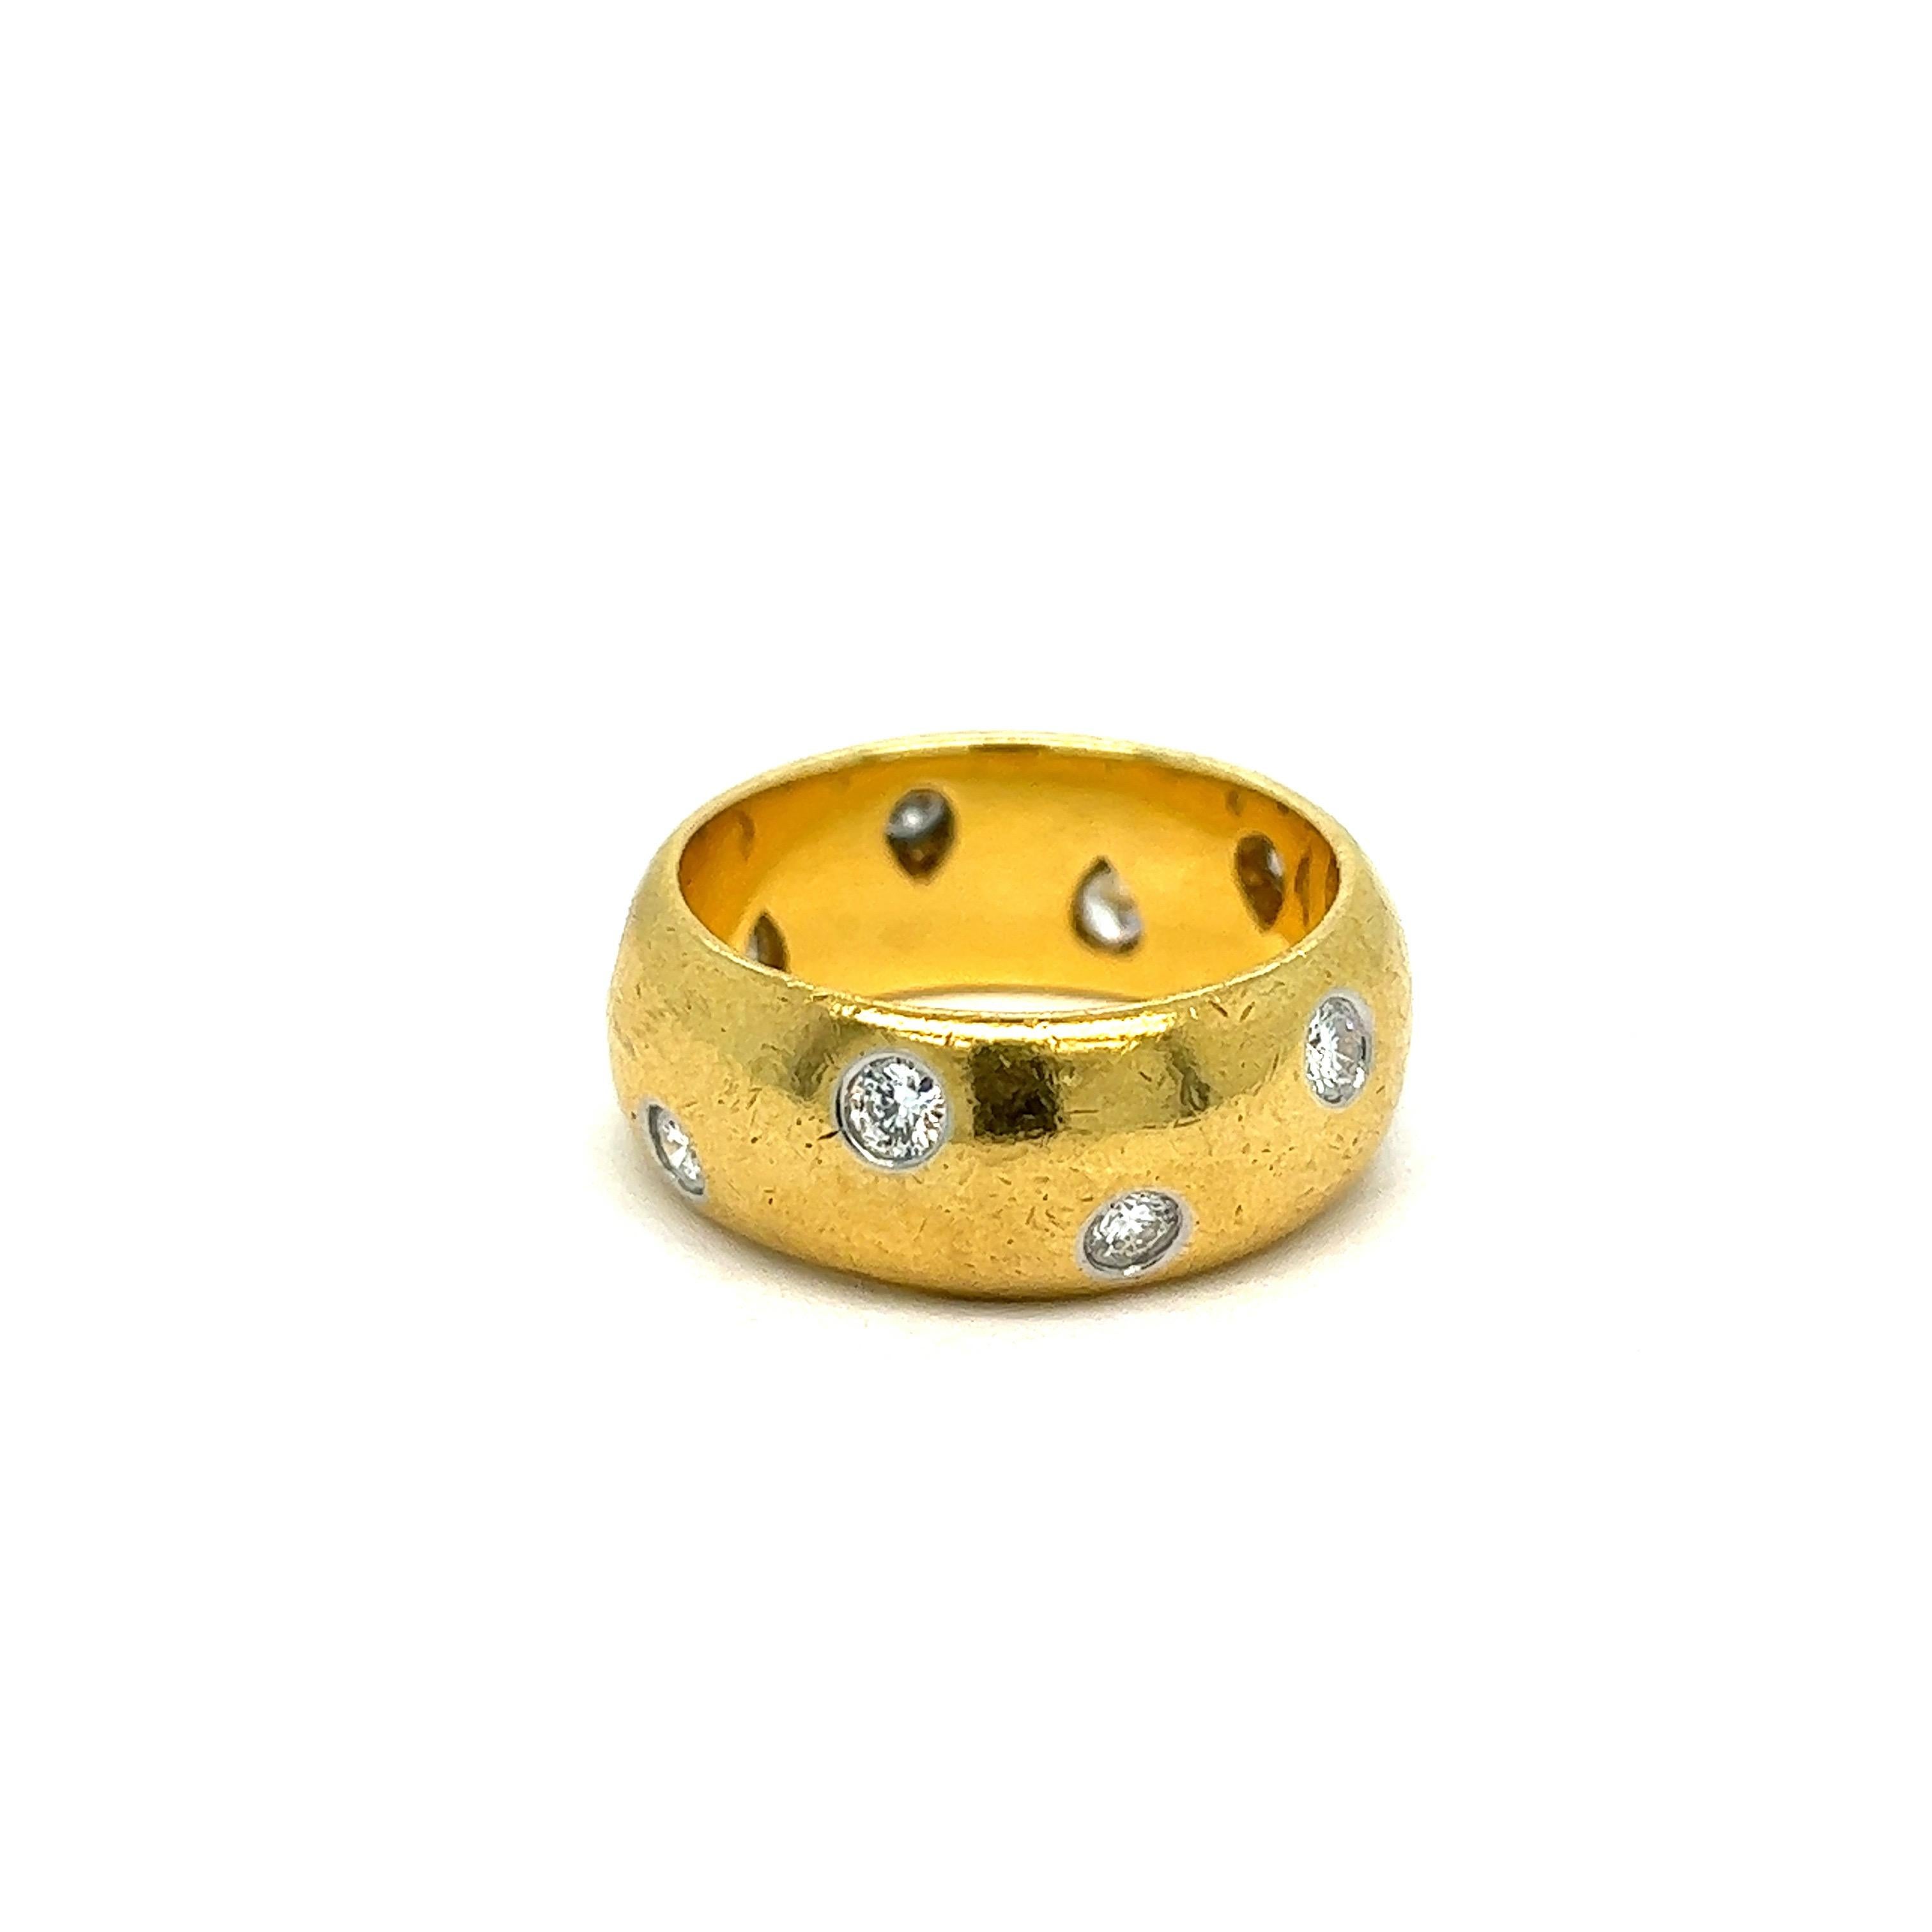 Tiffany & Co. Diamant-Gold-Platinband-Ring 

Diamanten im Rundschliff, 18 Karat Gelbgold; markiert Tiffany & Co. 750, Pt 950

Größe: 6 US
Gesamtgewicht: 10,8 Gramm